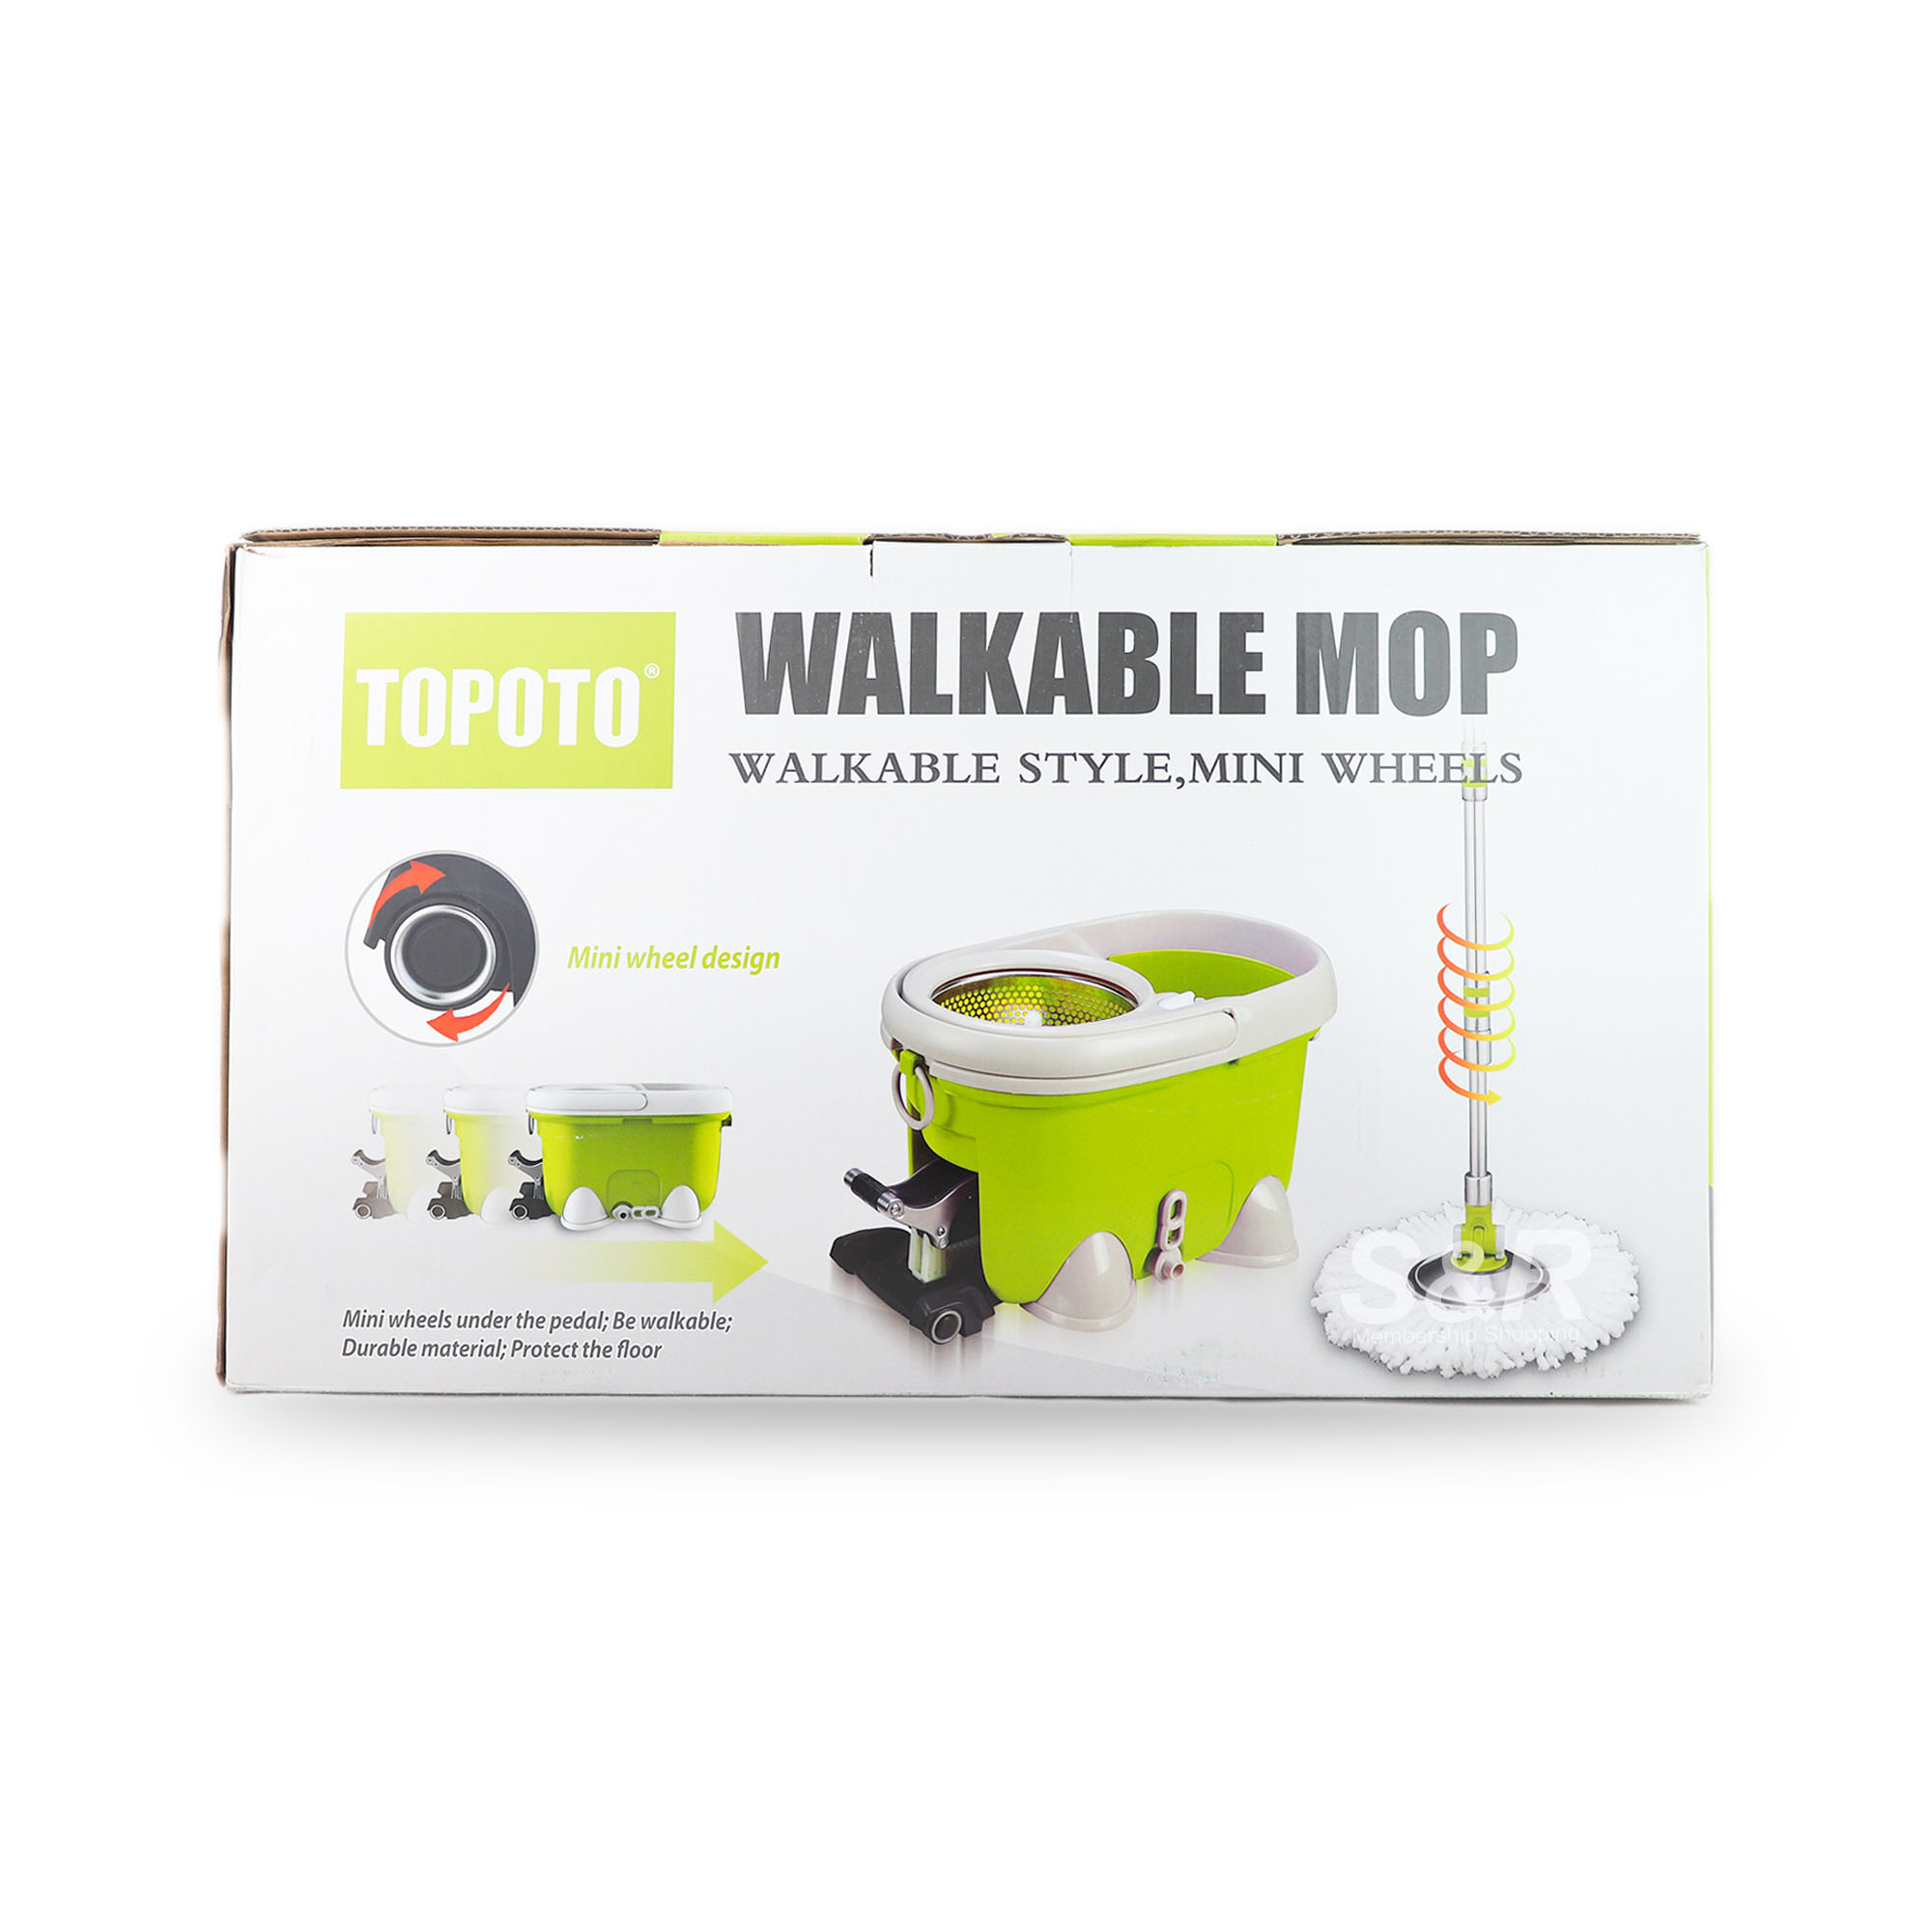 Topoto Walkable Mop 1 set